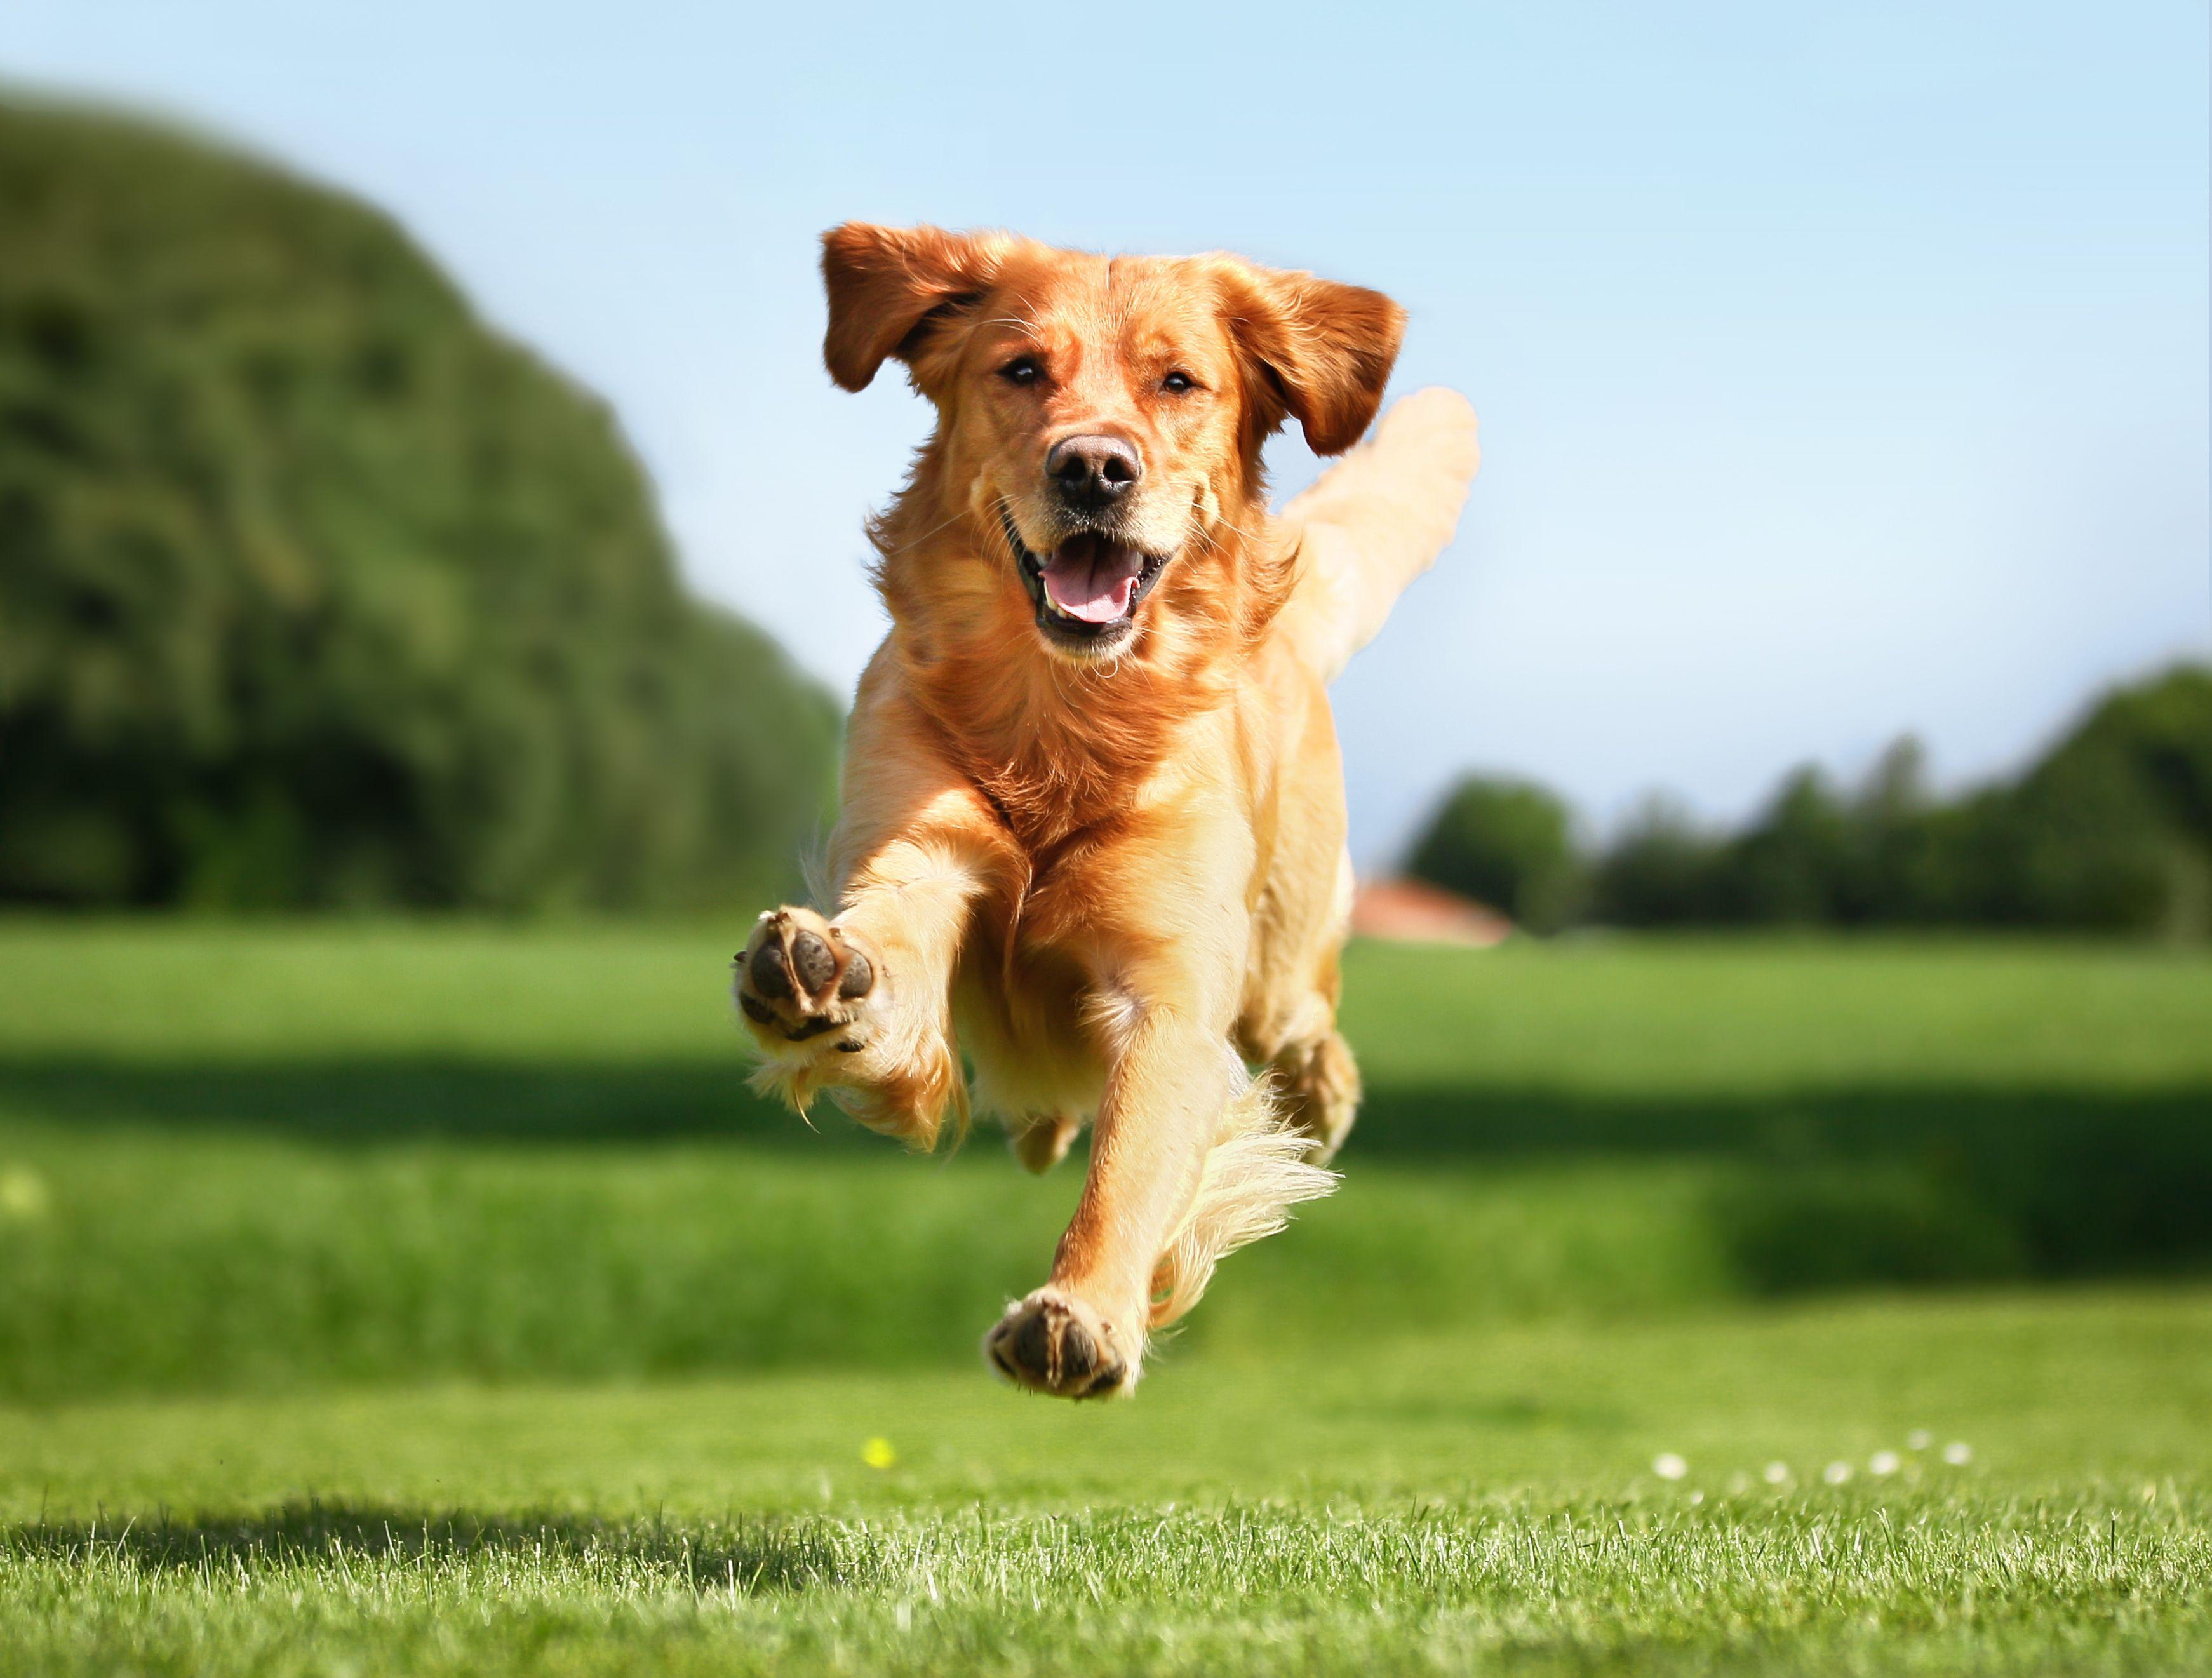 Running Dog Background Quality Image